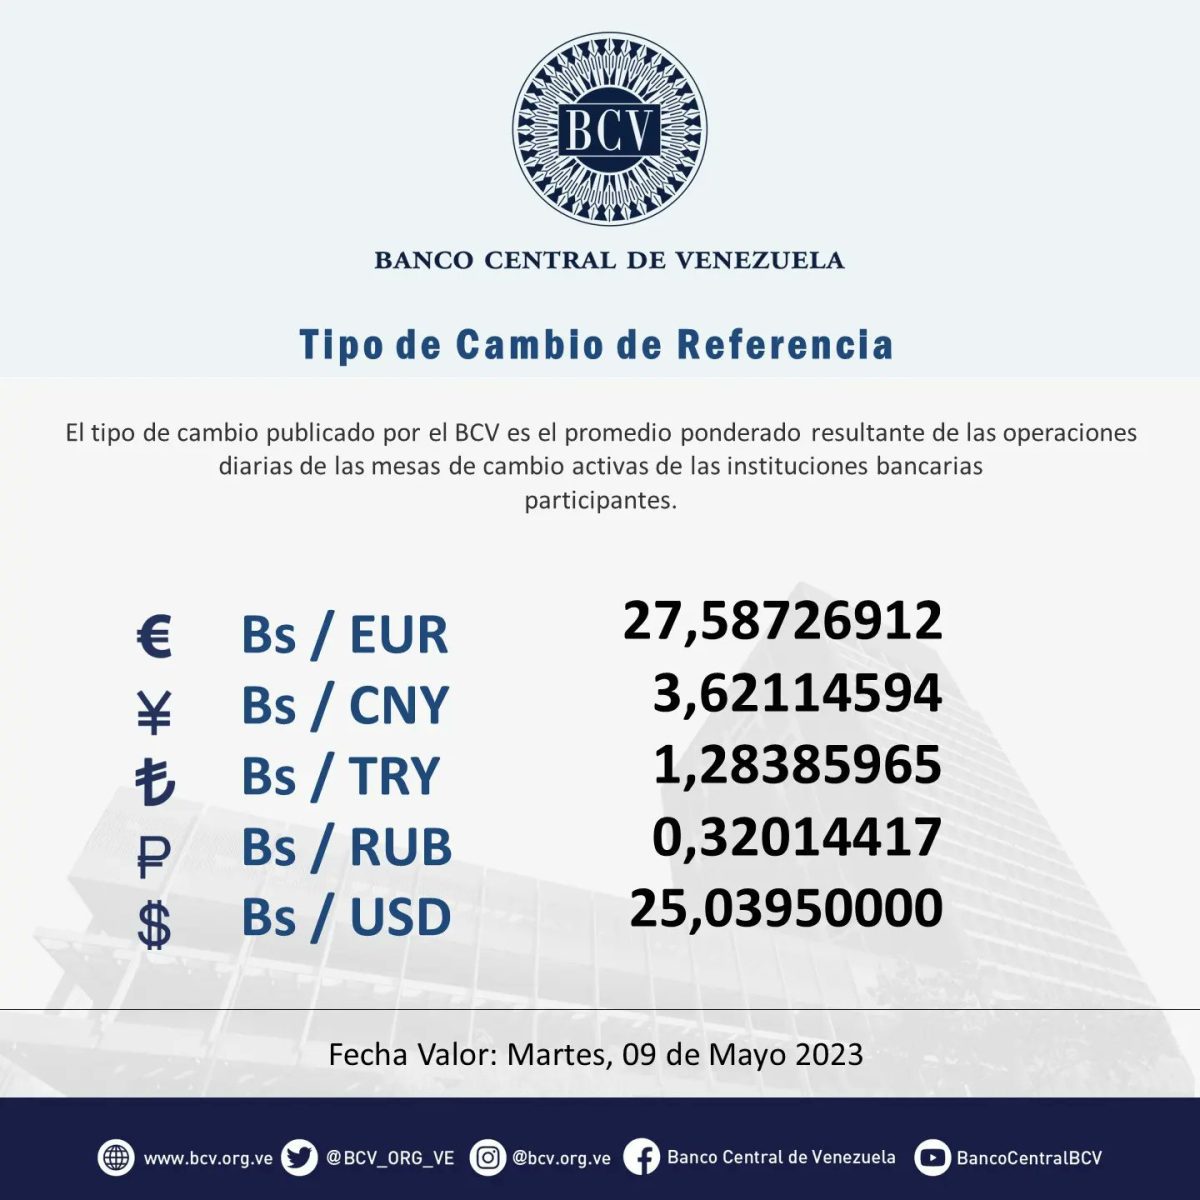 dolartoday en venezuela precio del dolar este lunes 8 de mayo de 2023 laverdaddemonagas.com bcv232